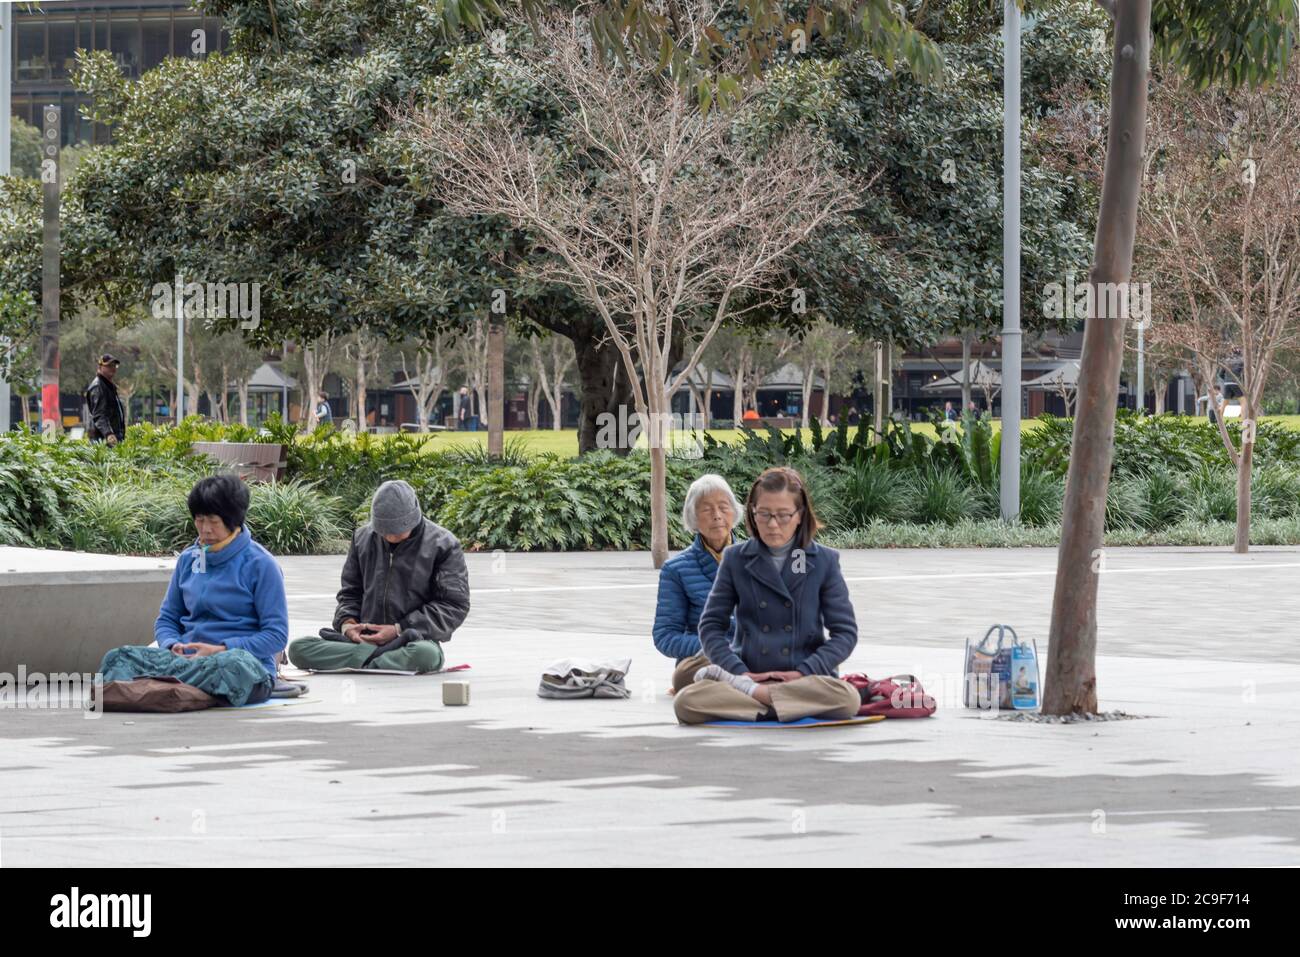 Un matin hivernal à Darling Harbour, Sydney, Australie, un petit groupe de personnes asiatiques plus âgées s'assoient en croix sur le sol et méditent Banque D'Images